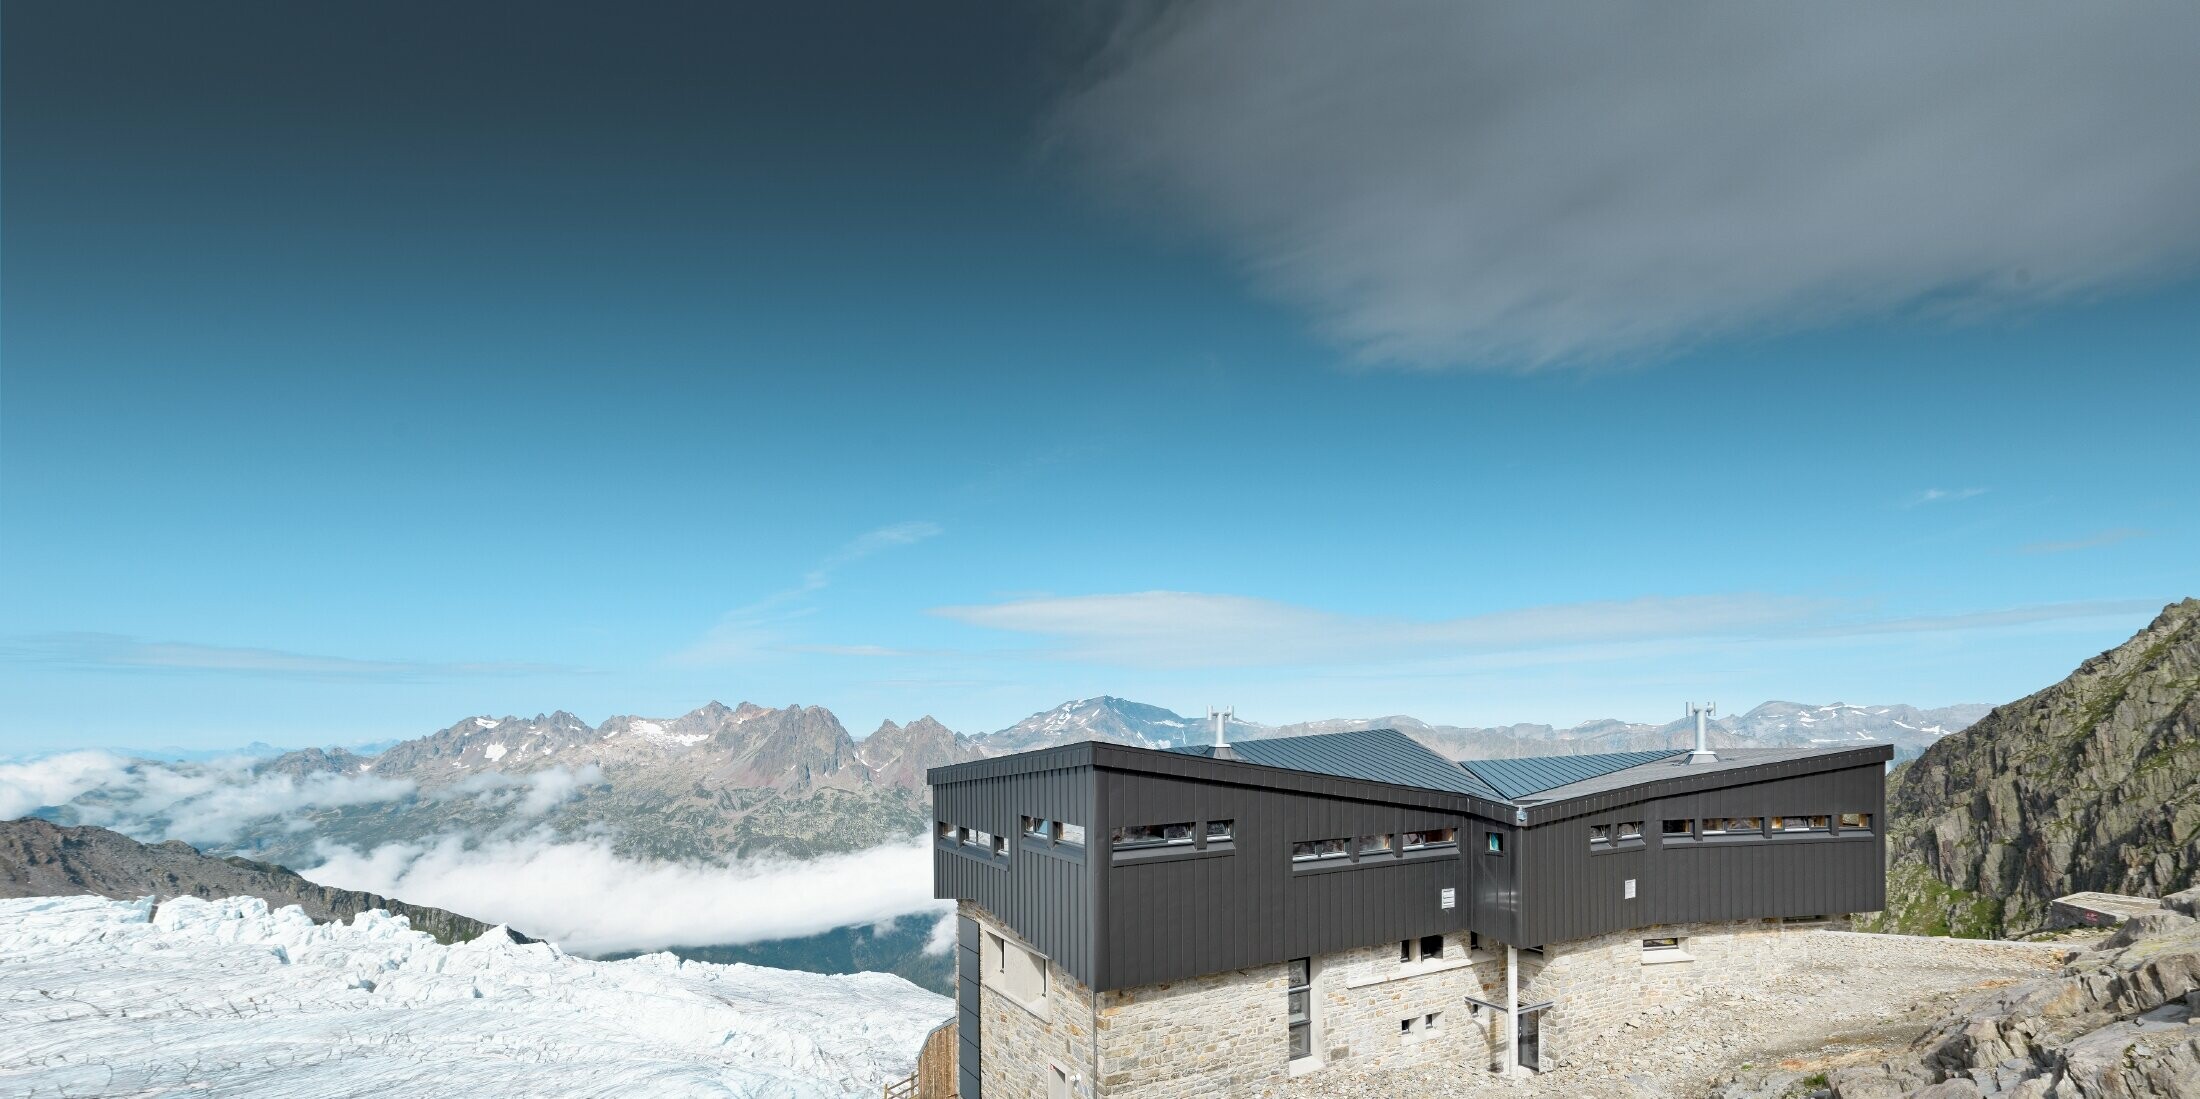 Refuge Albert 1er am Mont Blanc mit PREFALZ in Schwarzgrau am Dach und der Fassade.